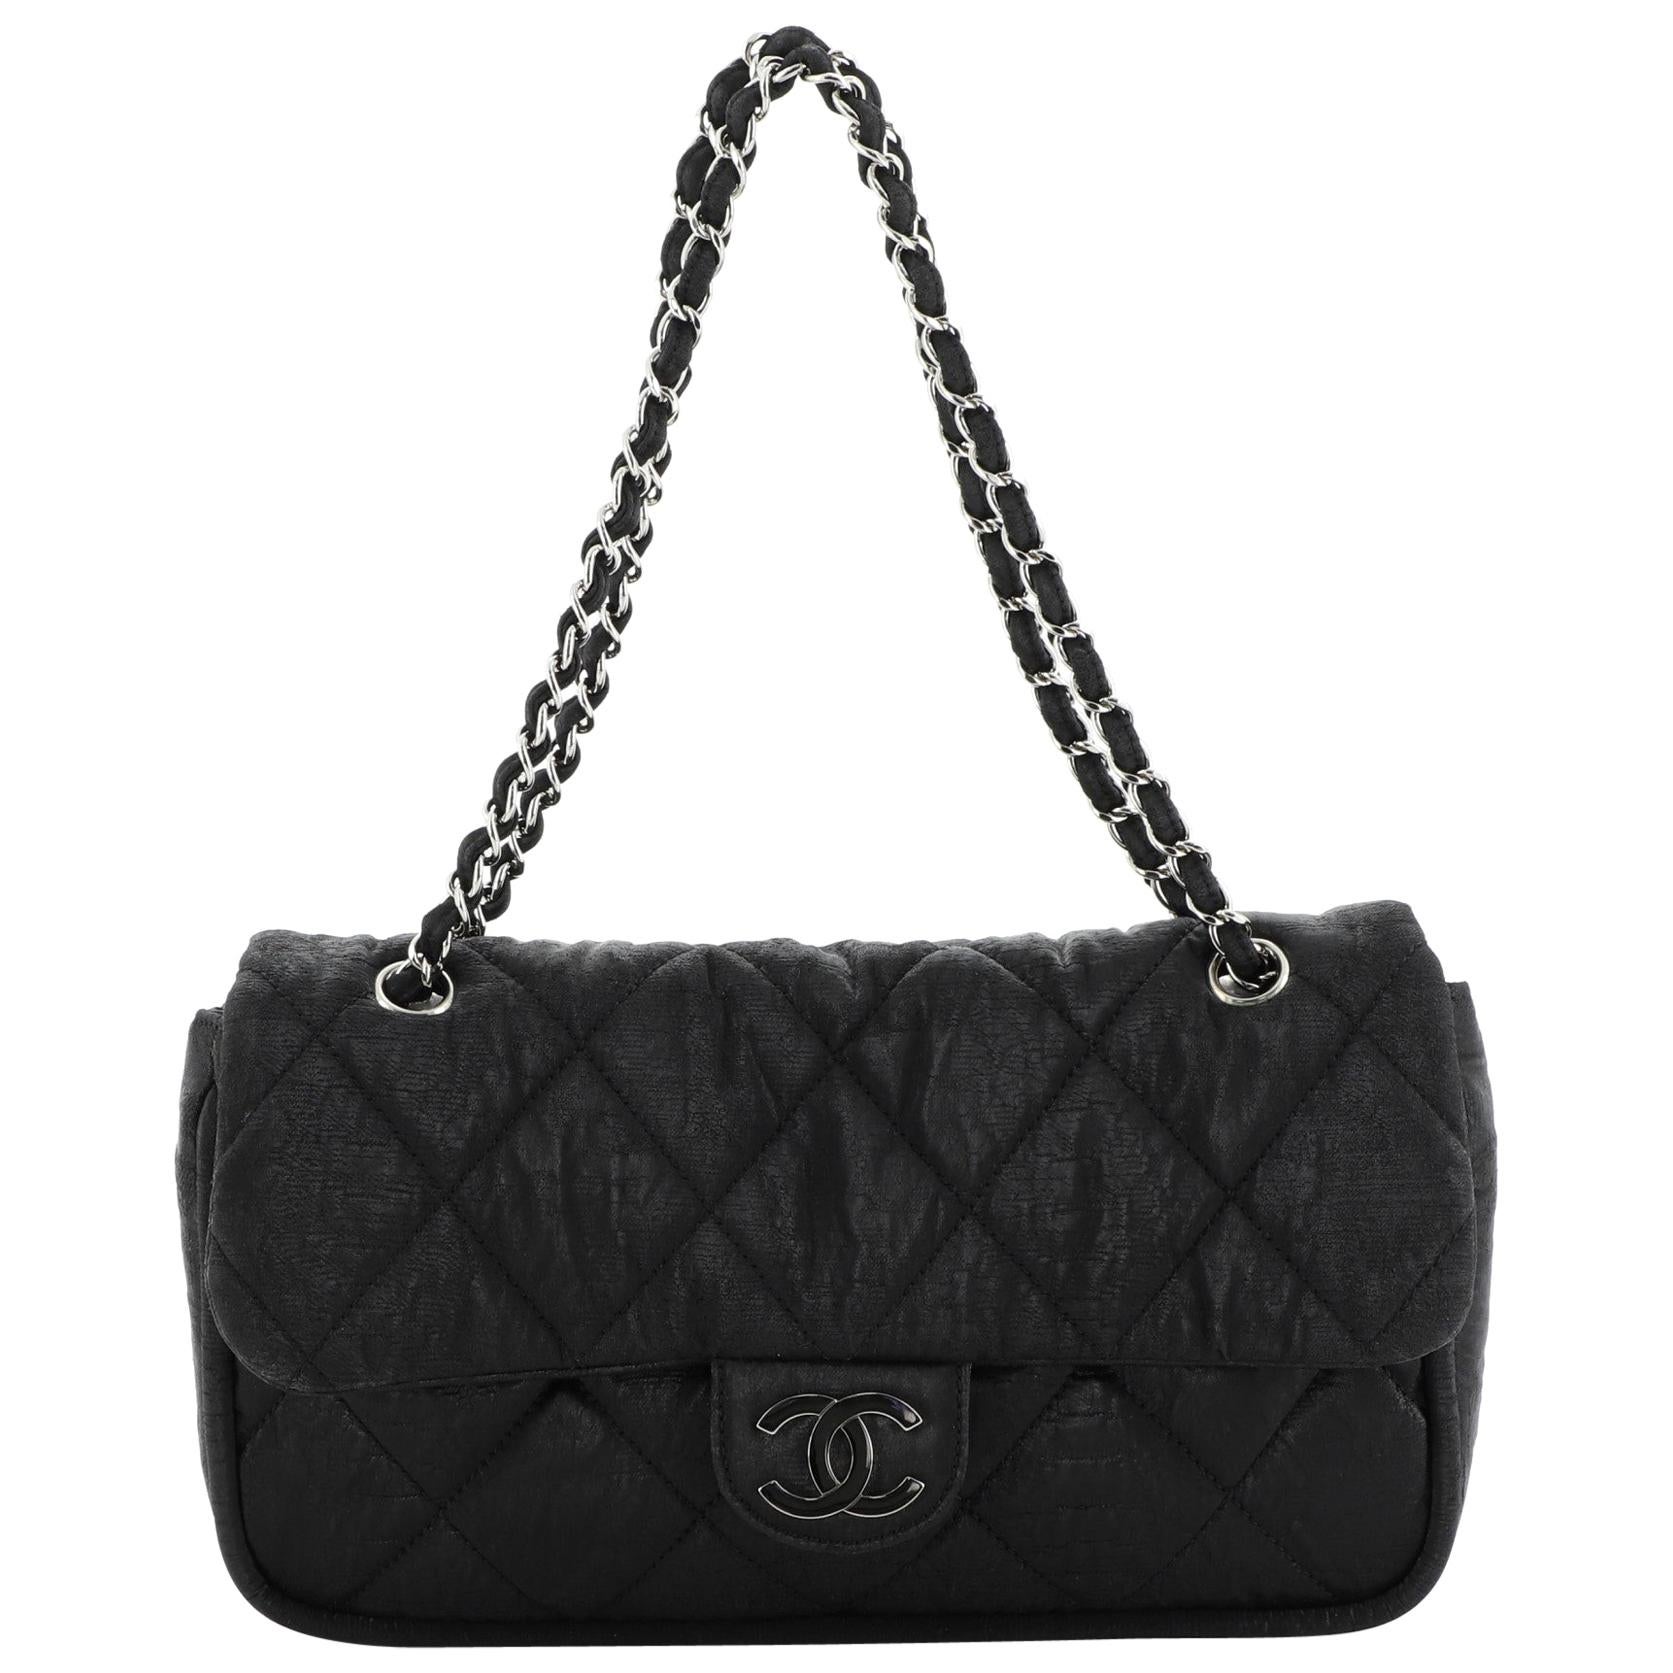 Chanel Le Marais Flap Bag - Black Shoulder Bags, Handbags - CHA642957